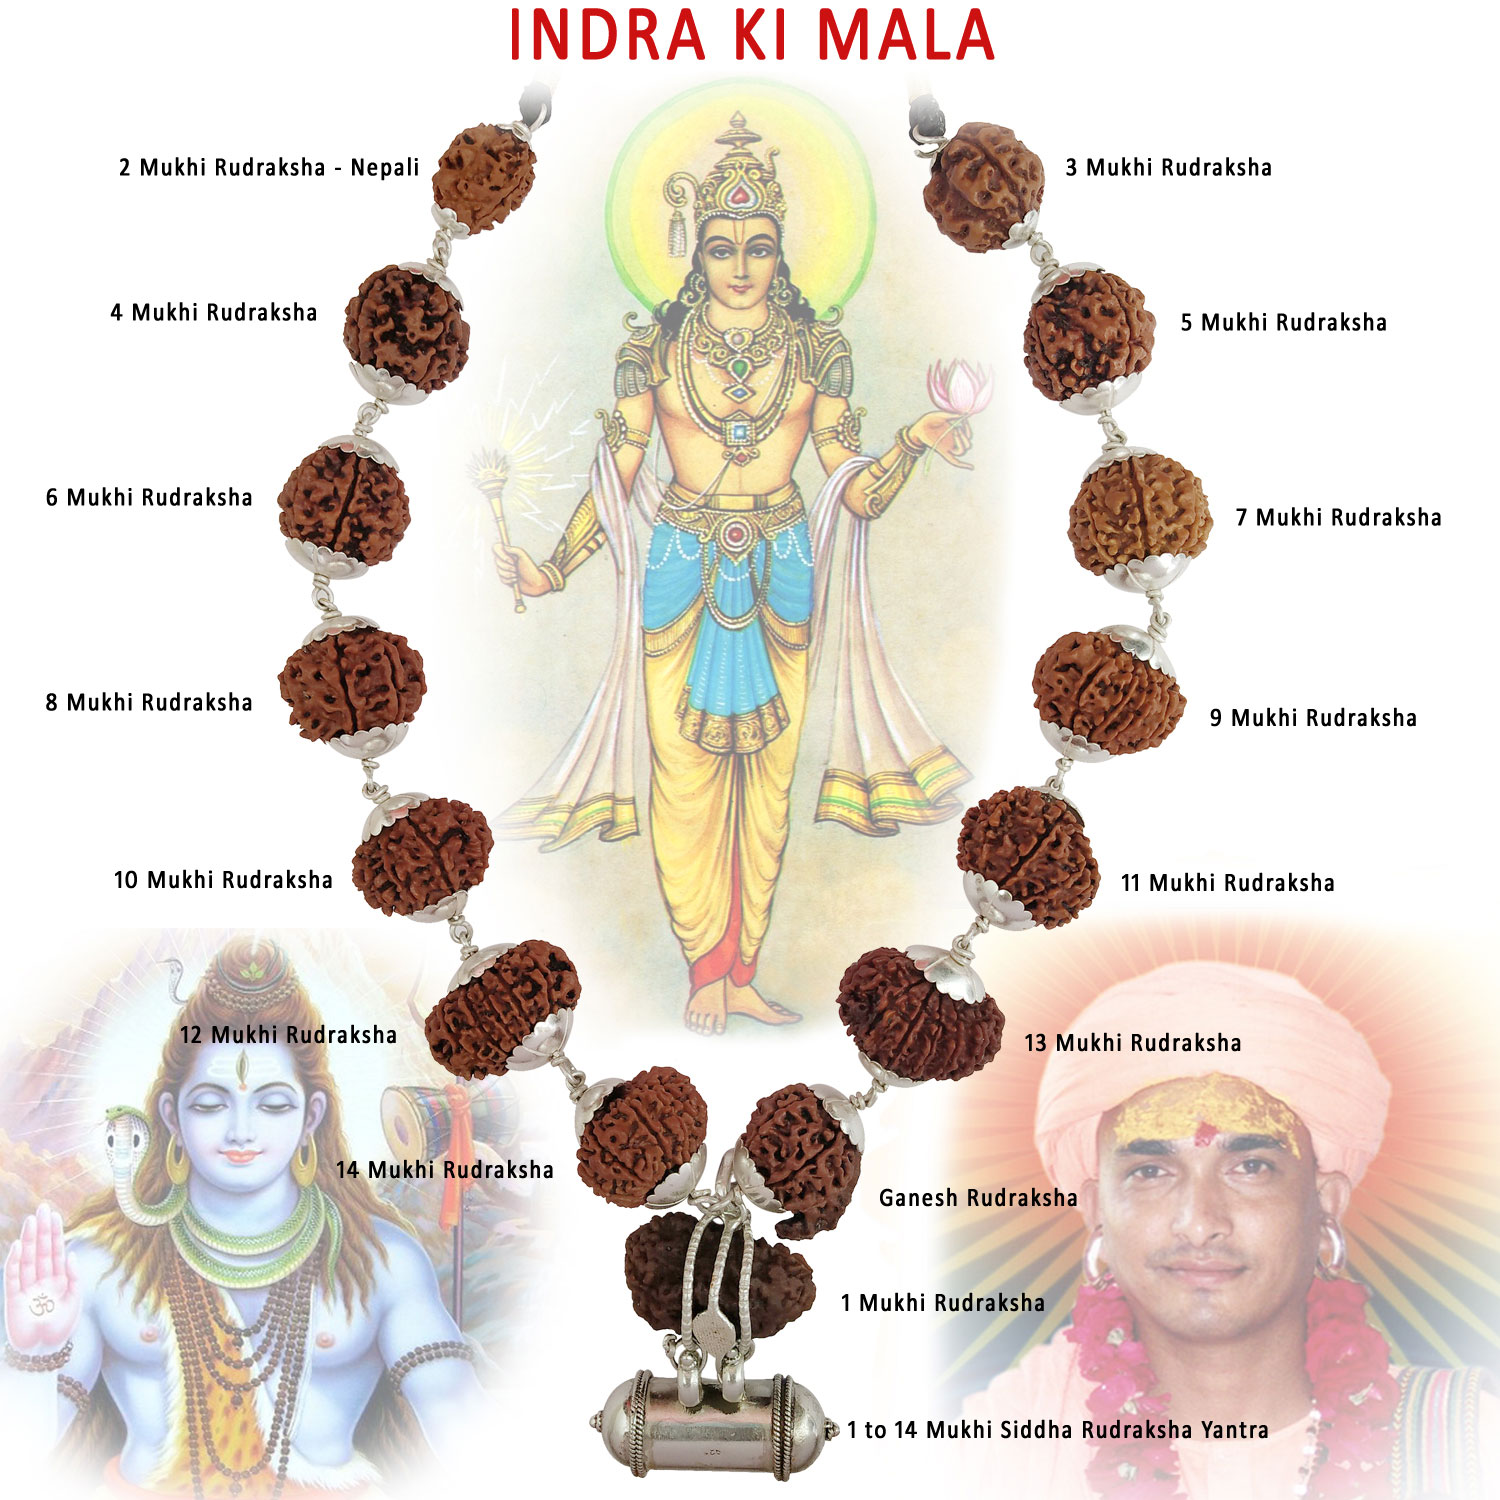 Indra's Mala